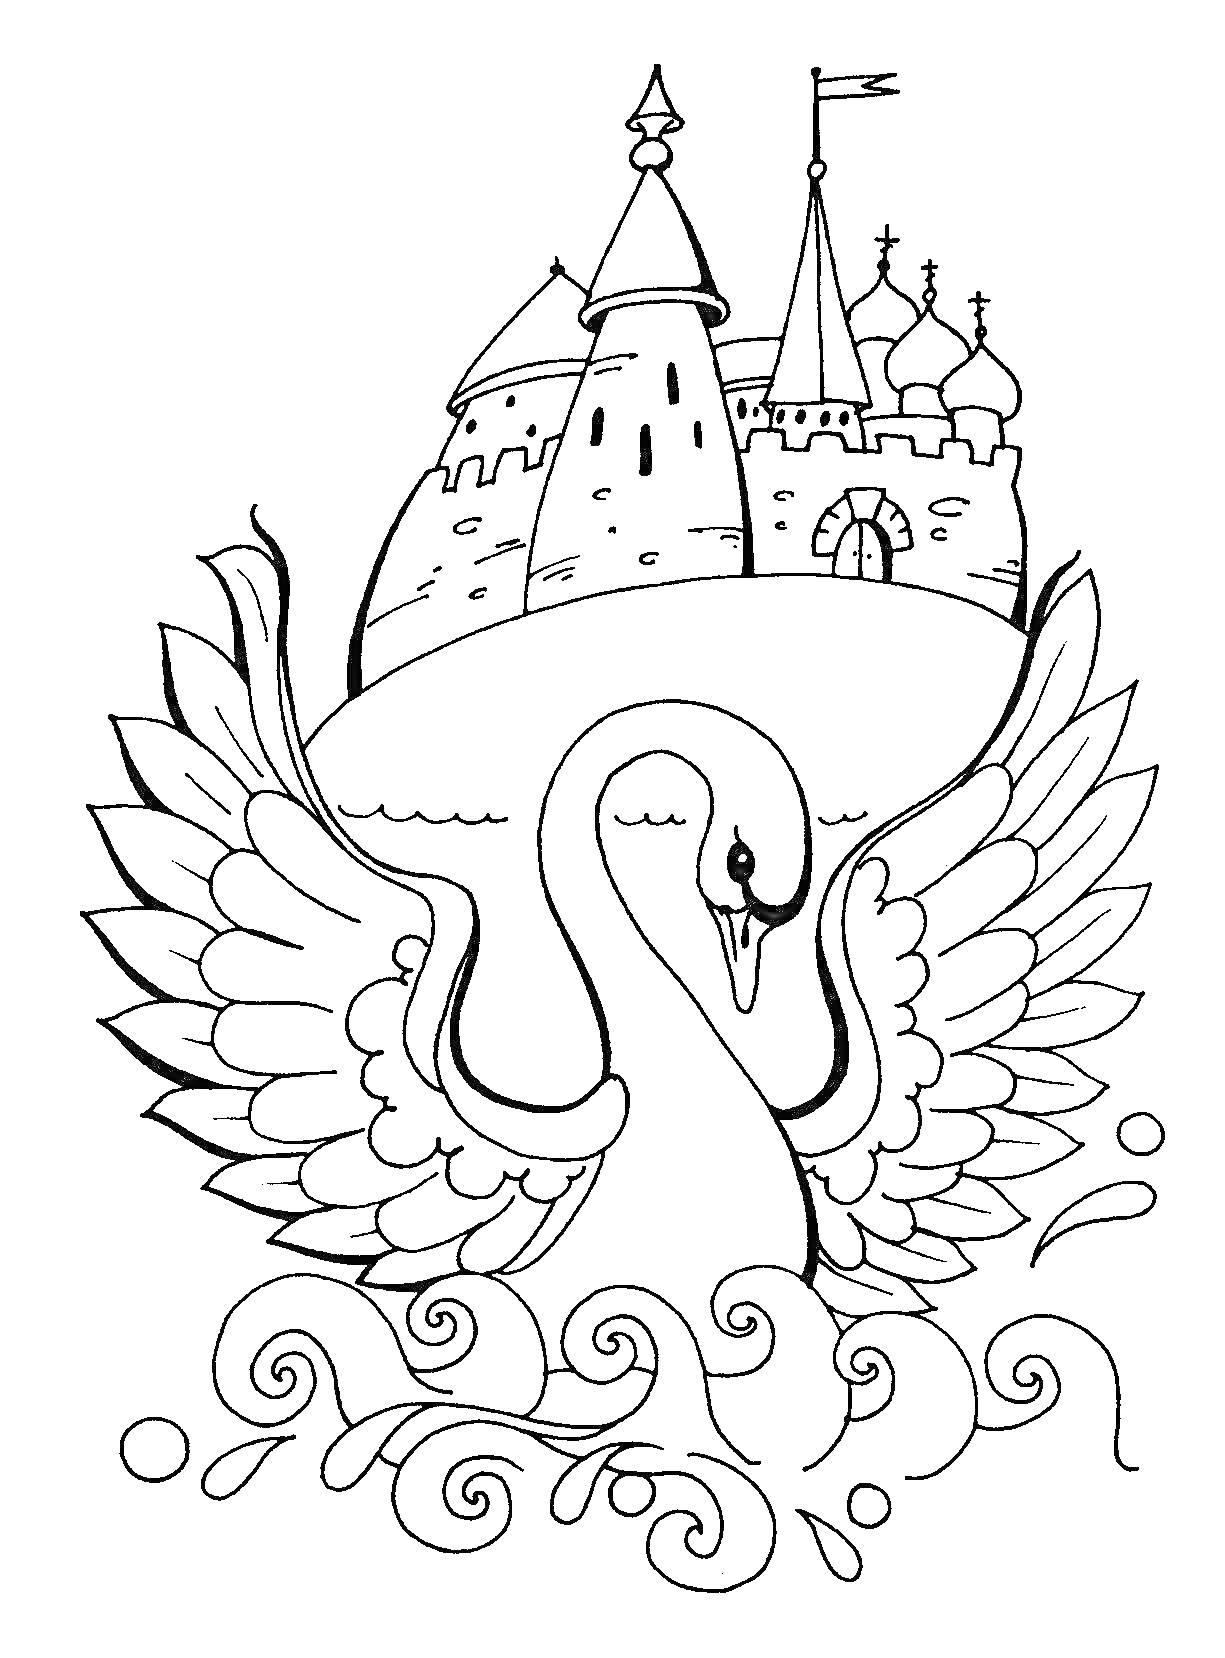 Лебедь перед замком с куполами и флагом, в окружении волн